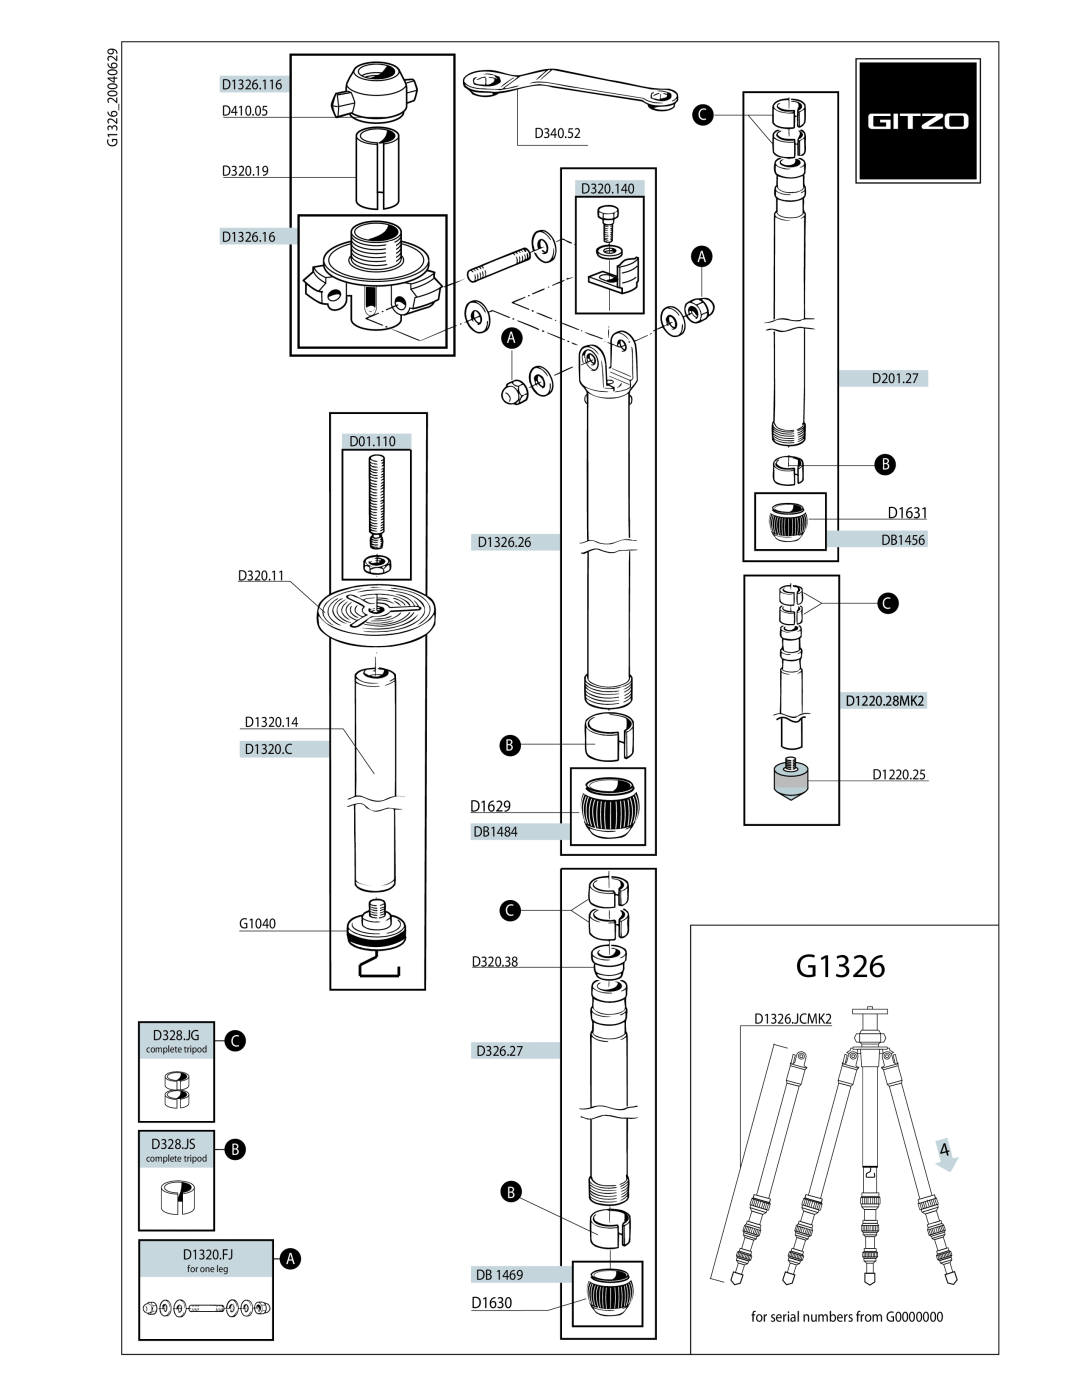 Gitzo G1326 manual D1631, D1629, D1630 